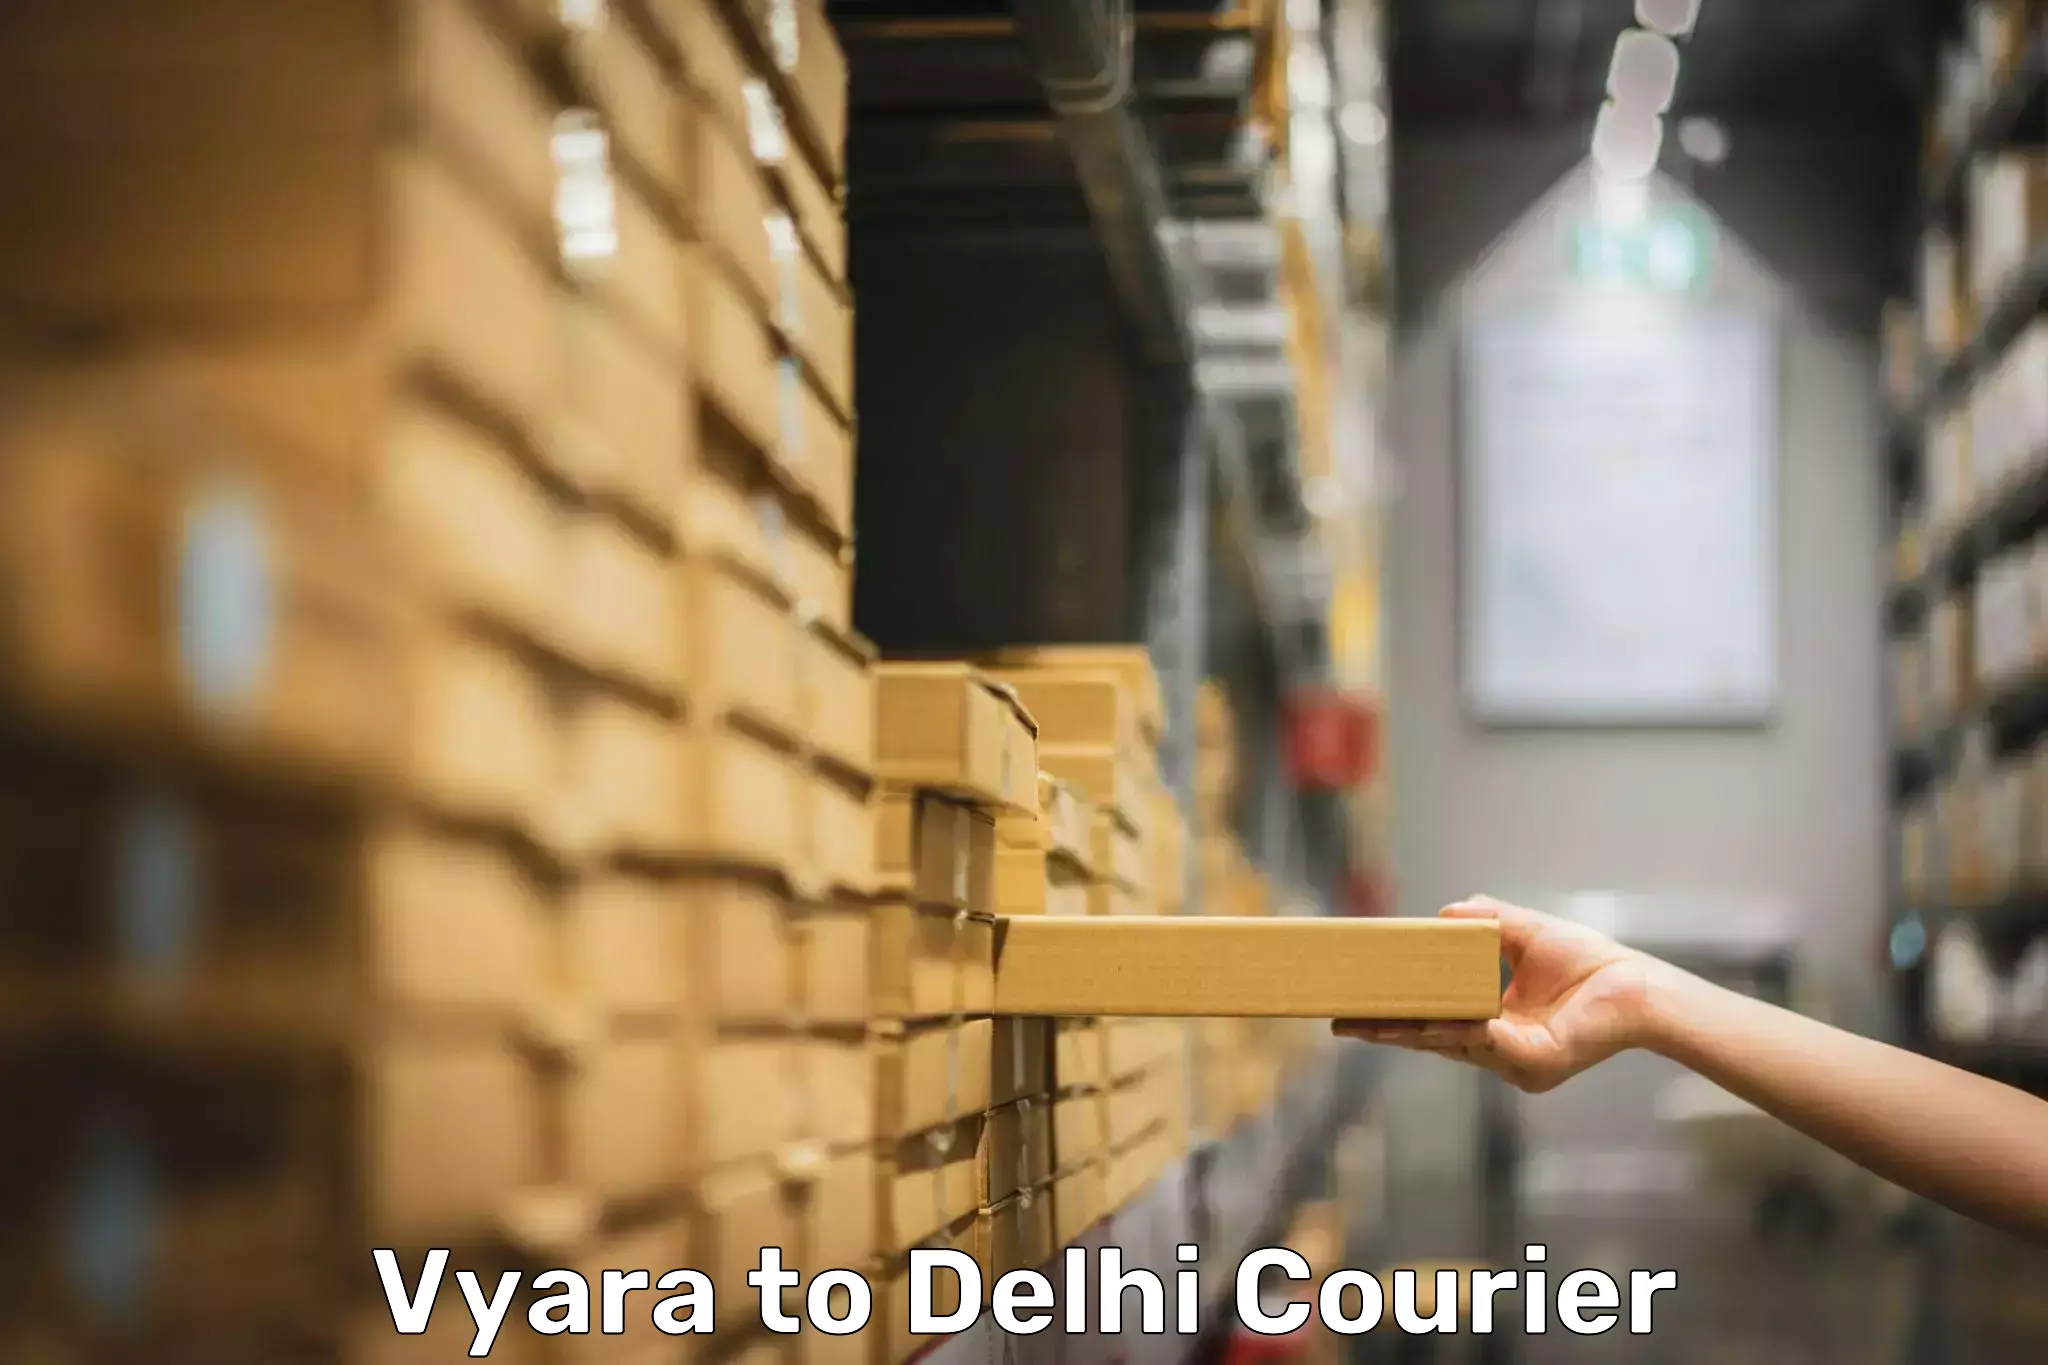 Door-to-door baggage service Vyara to East Delhi